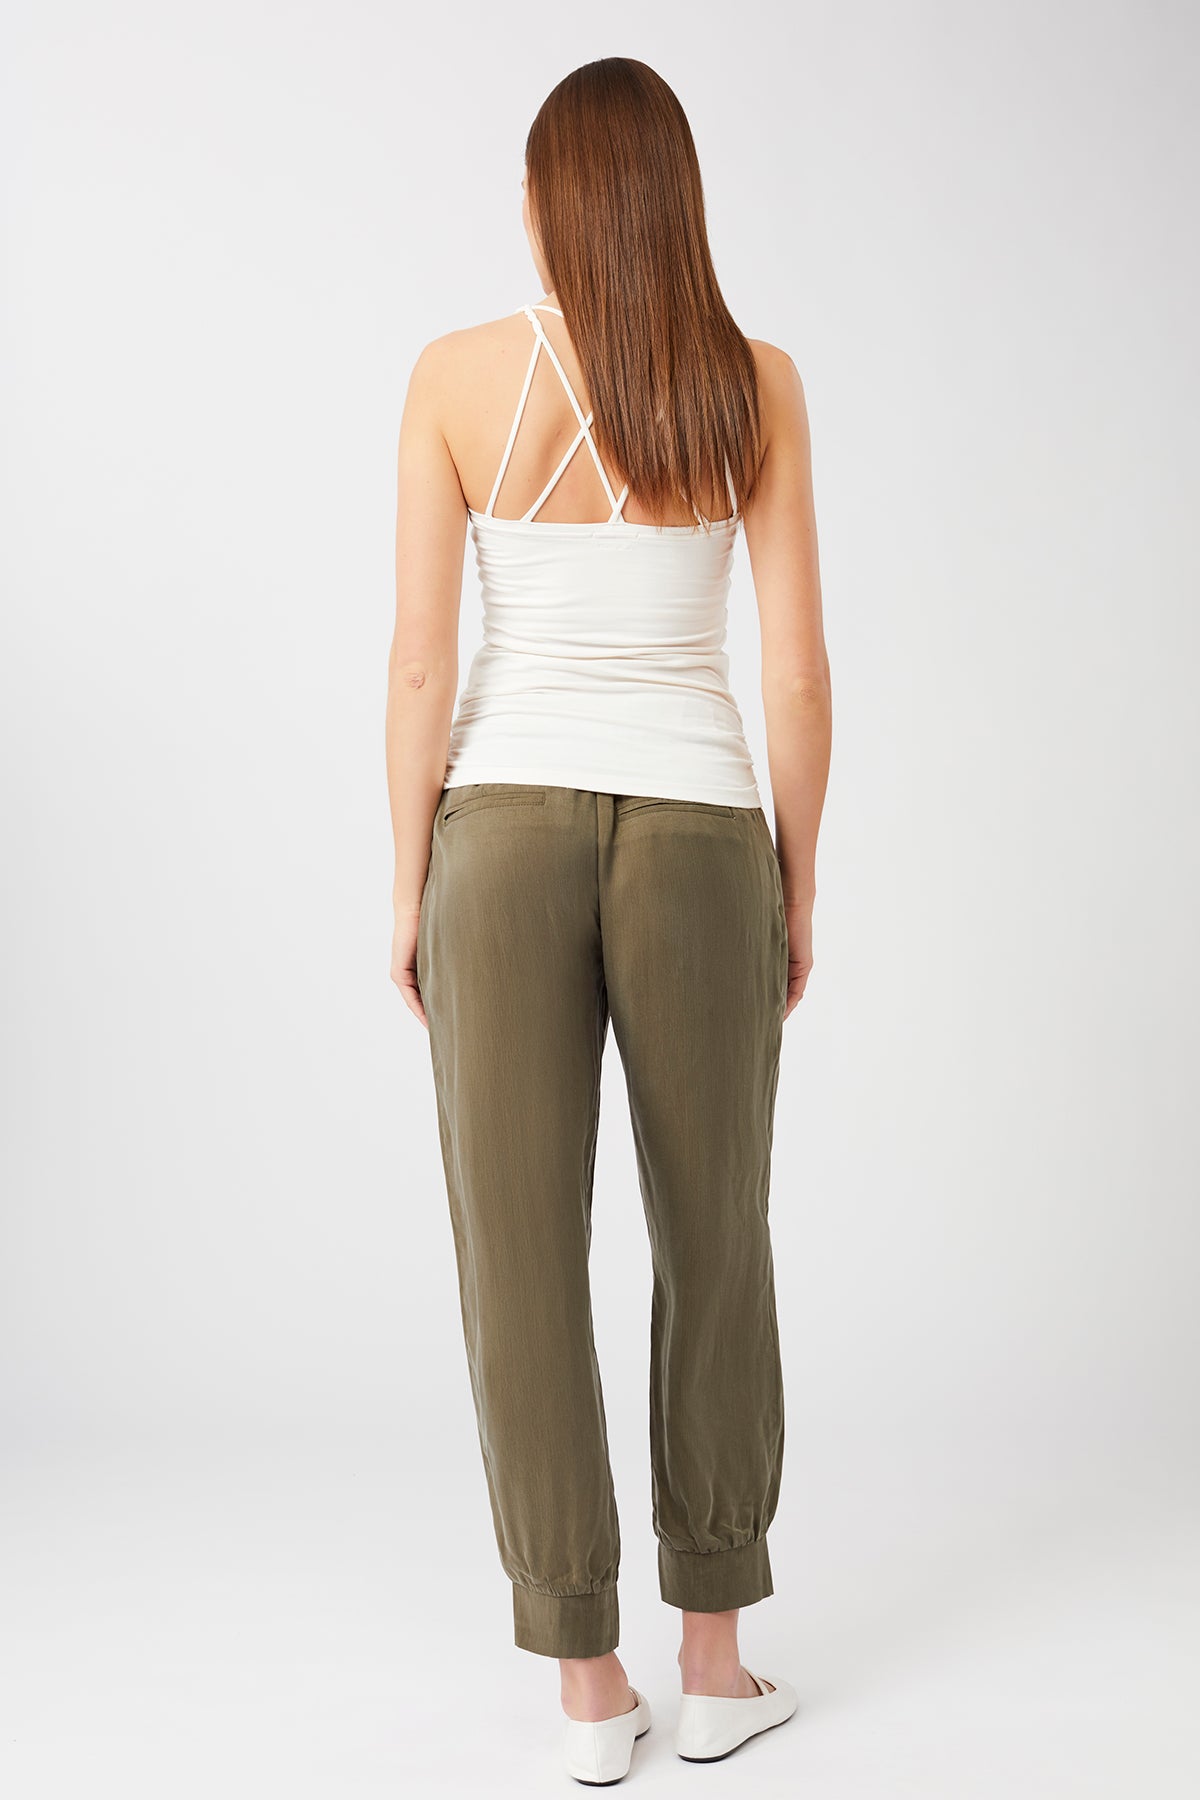 Mandala Yoga Pant Grün Outfit Rückseite - Milan Pants